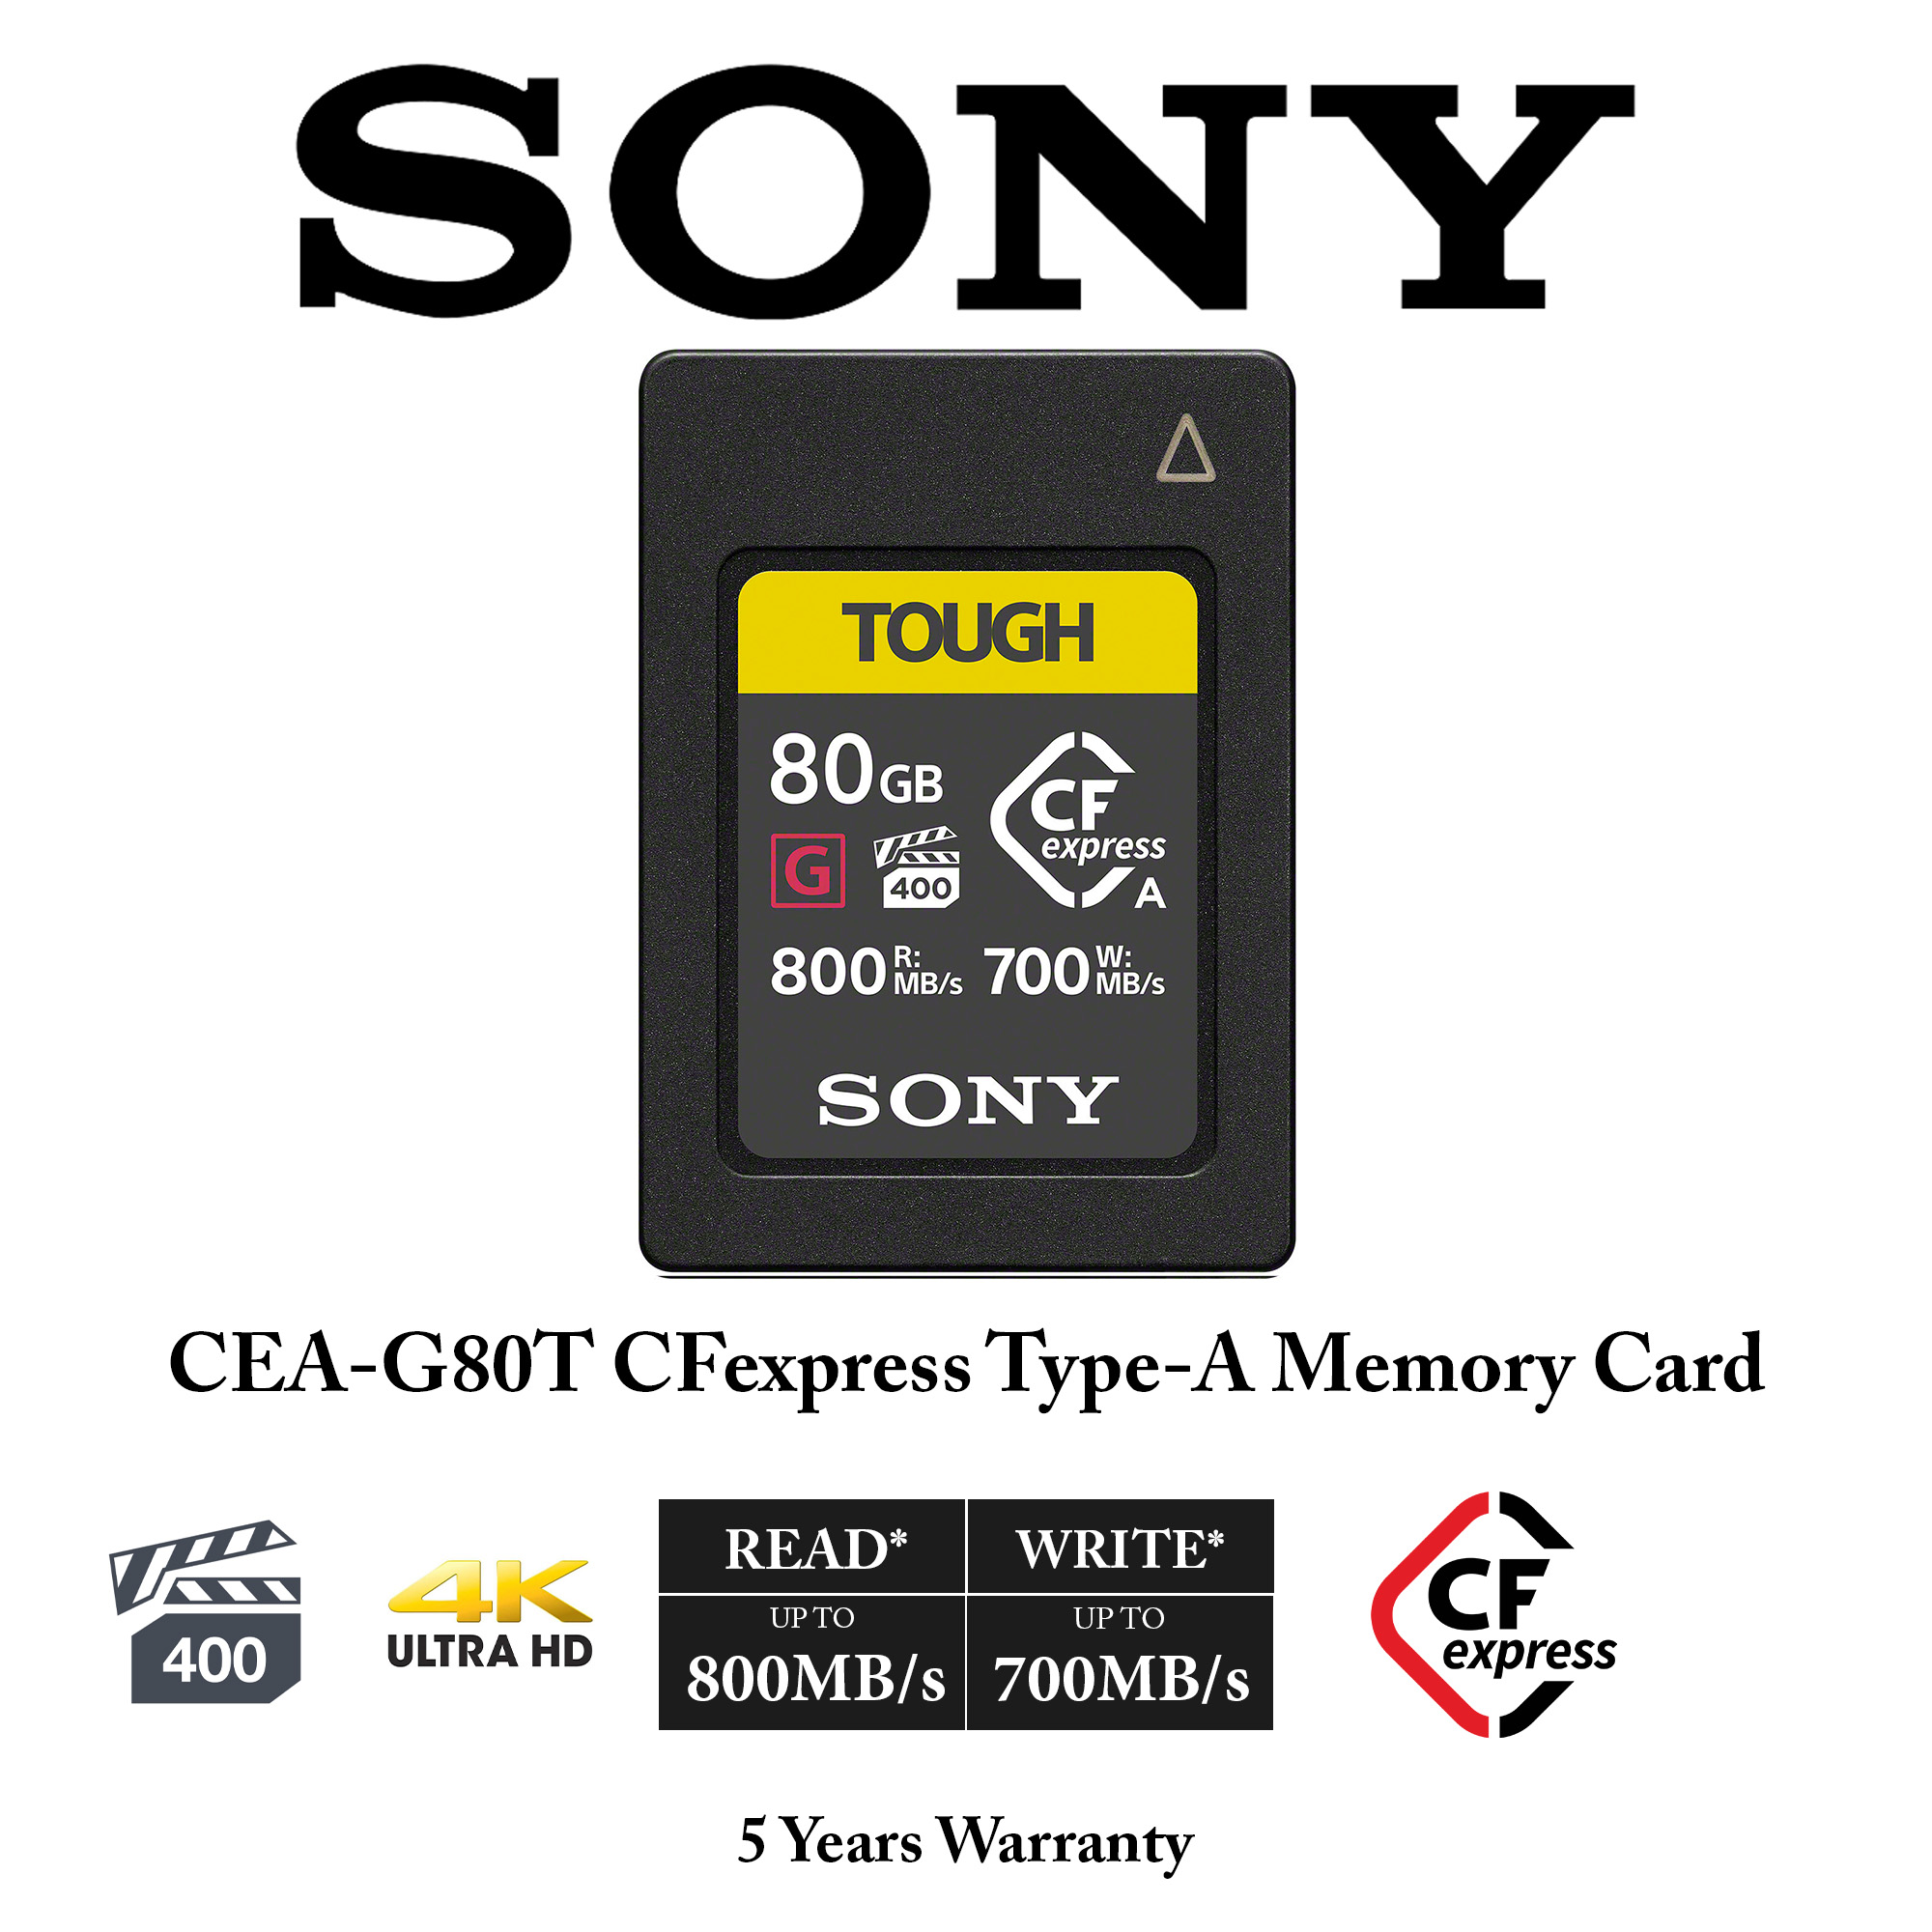 最適な価格 ソニー CFexpress Type Aメモリーカード CEA-G80T TOUGH 80GB ILCE-1 FX6 FX3 ILCE-7SM3  ILCE-7M4対応